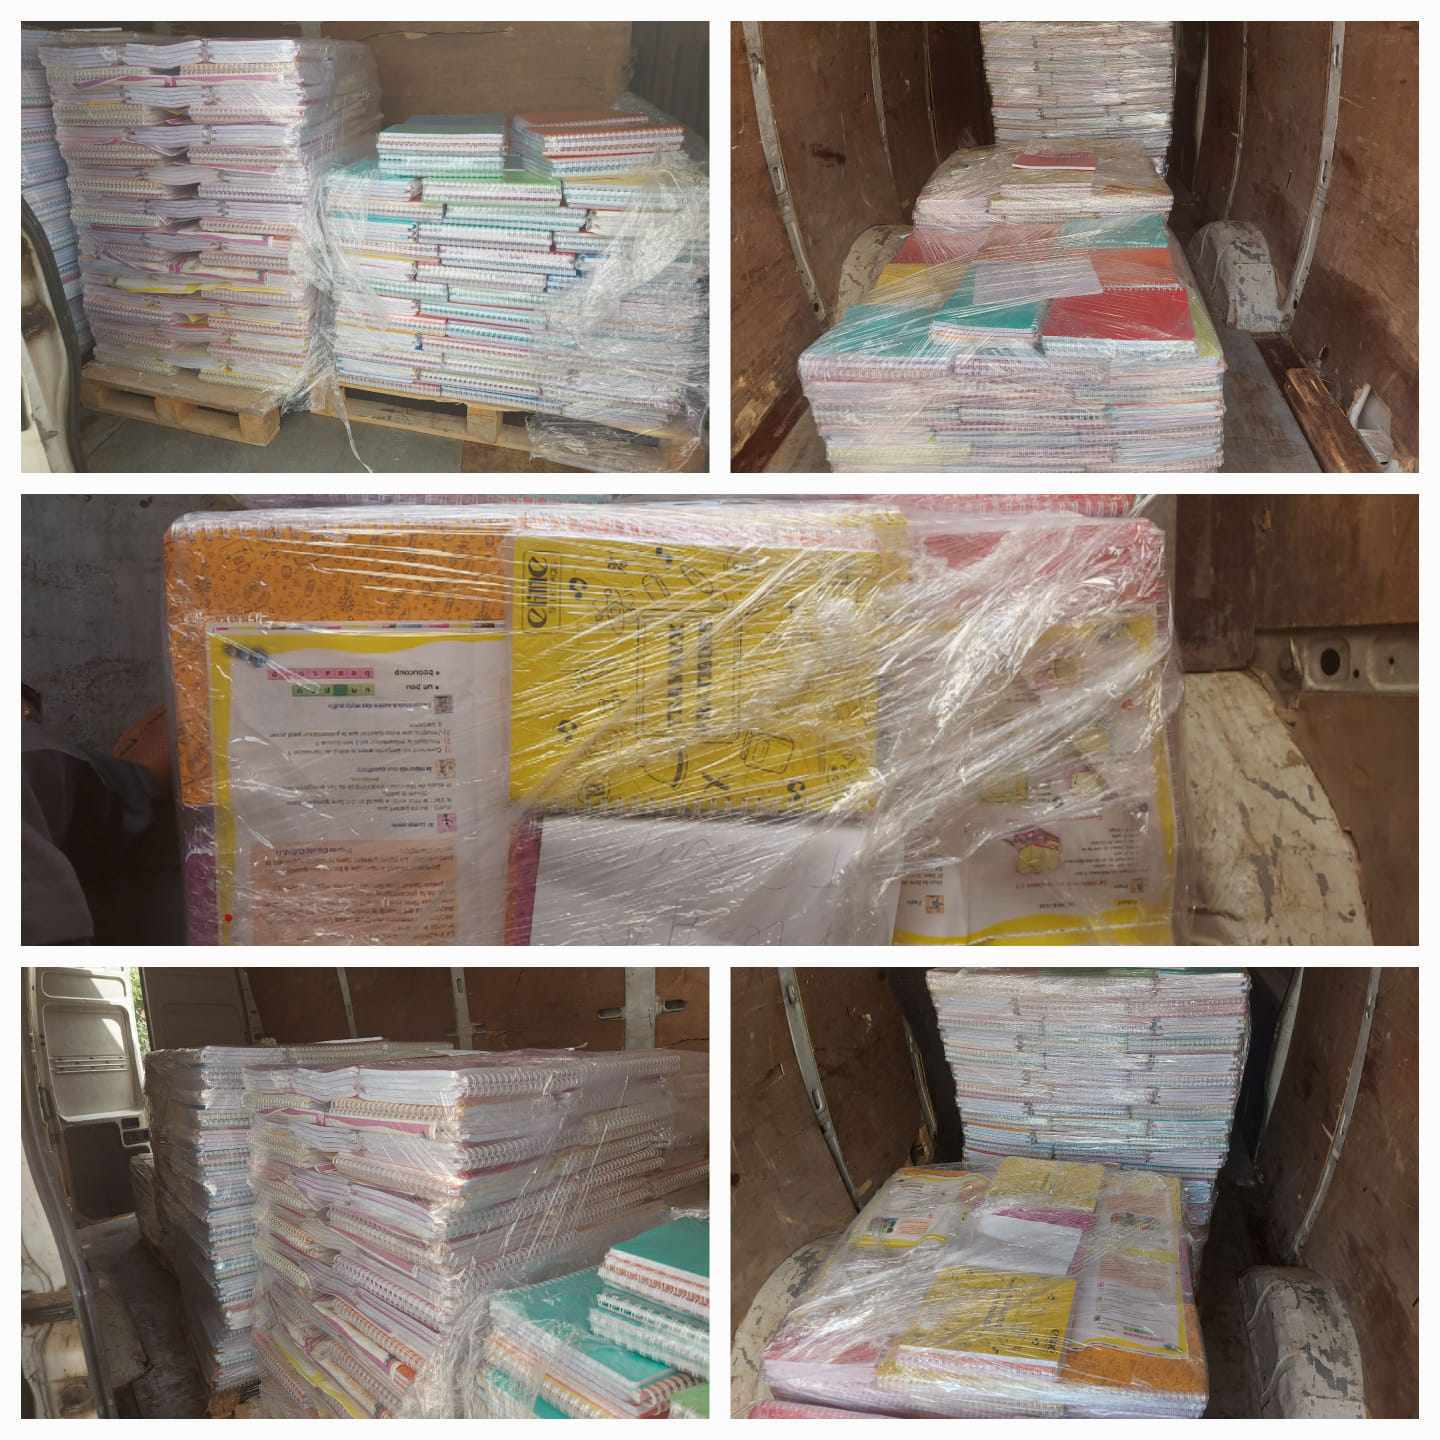 Tunis: Saisie de 2456 cahiers scolaires dans une usine (Photos)